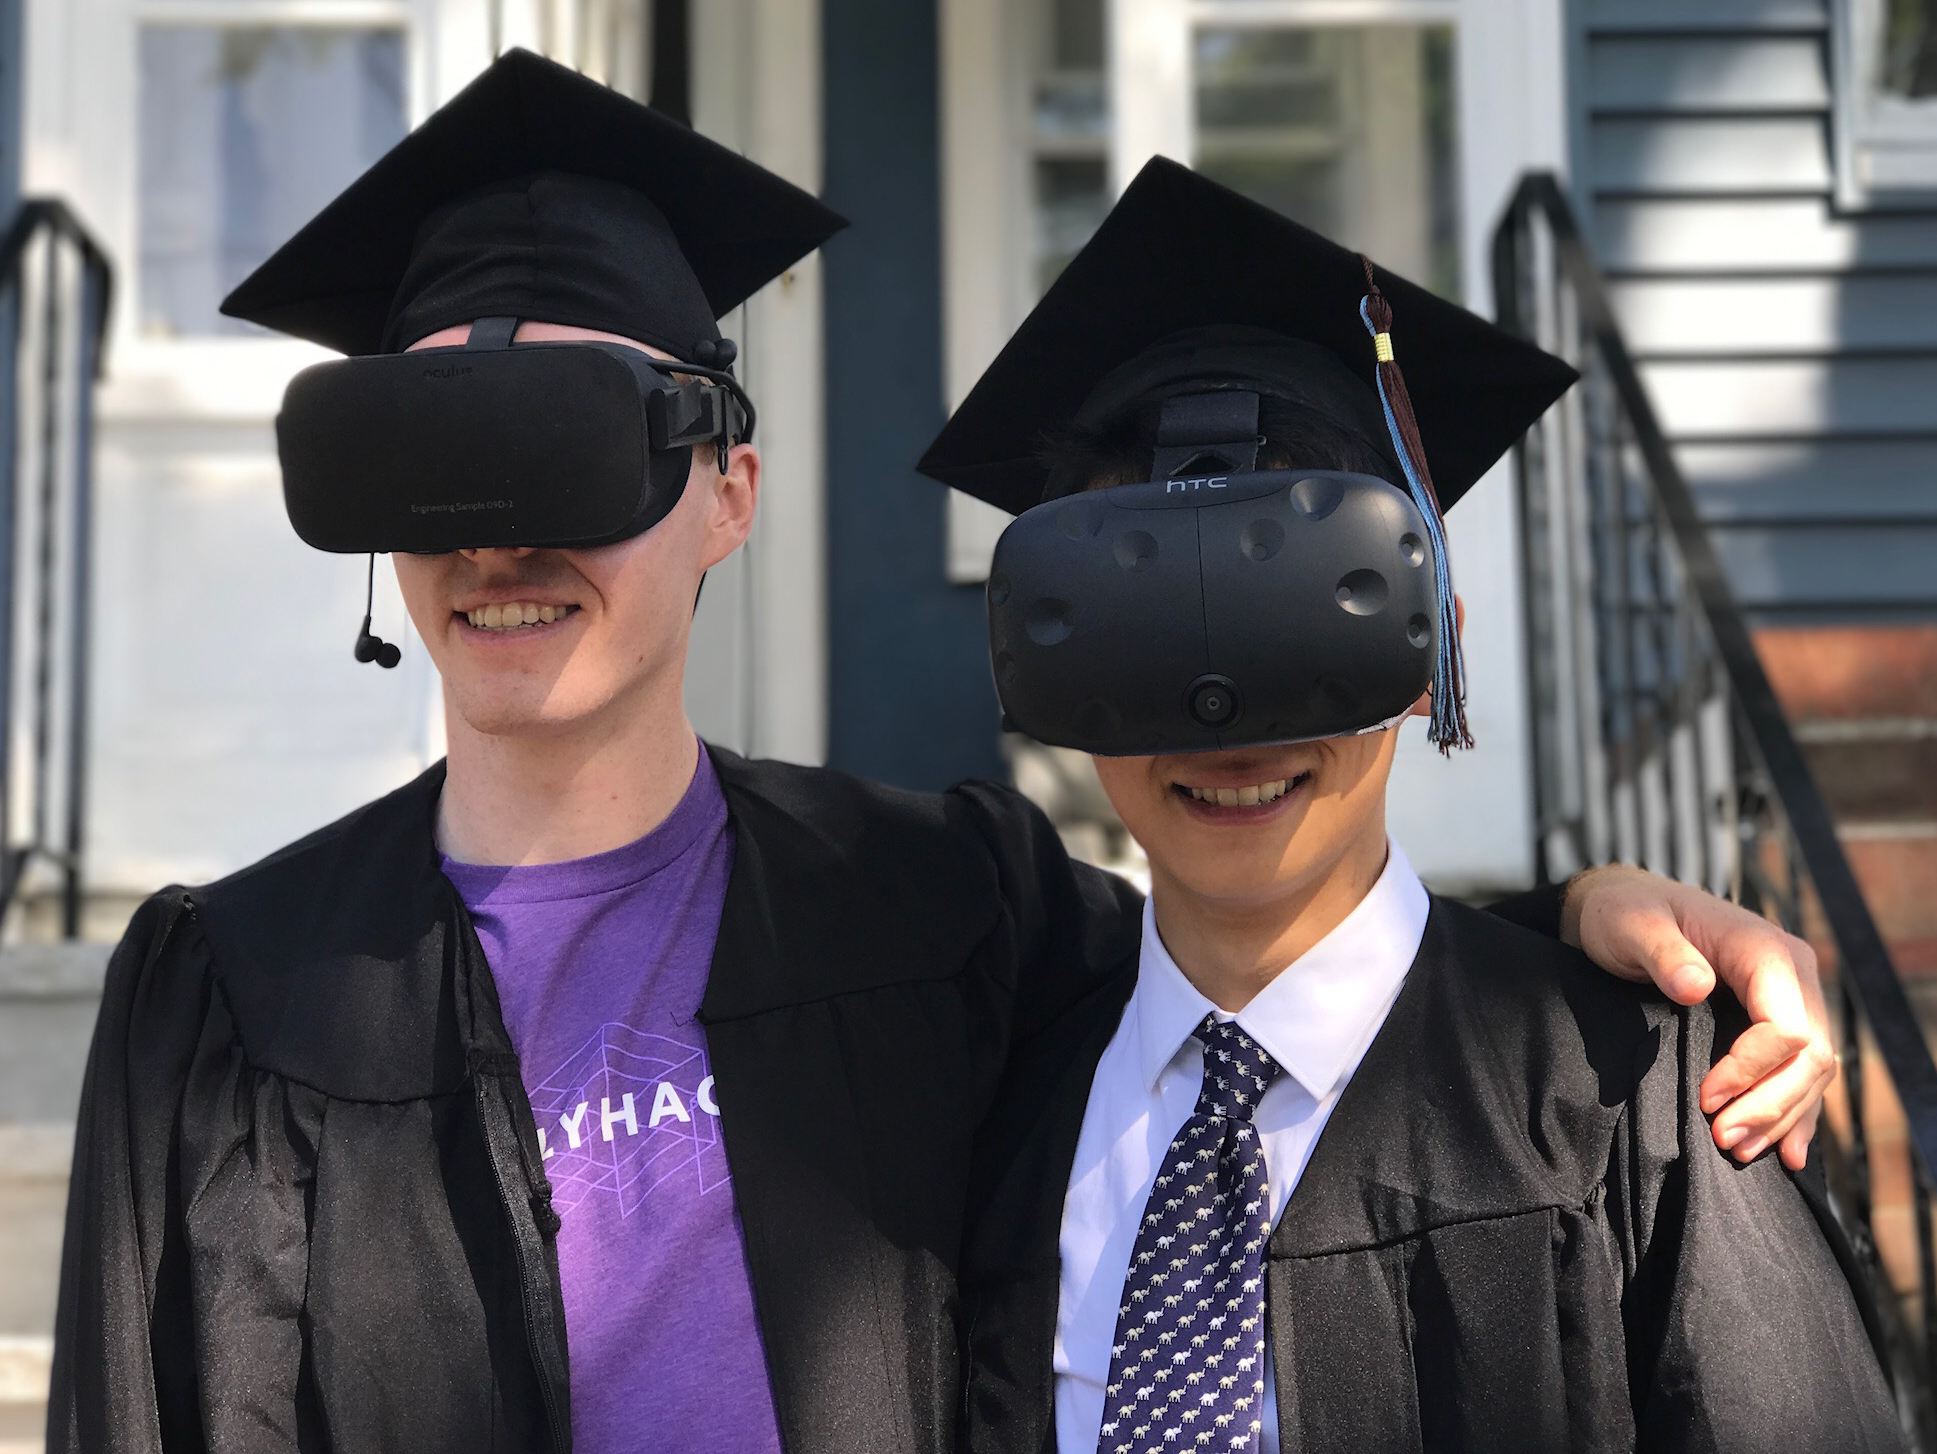 ​ Jeremy Slavitz and Henry Zhou wearing VR goggles on graduation day. ​